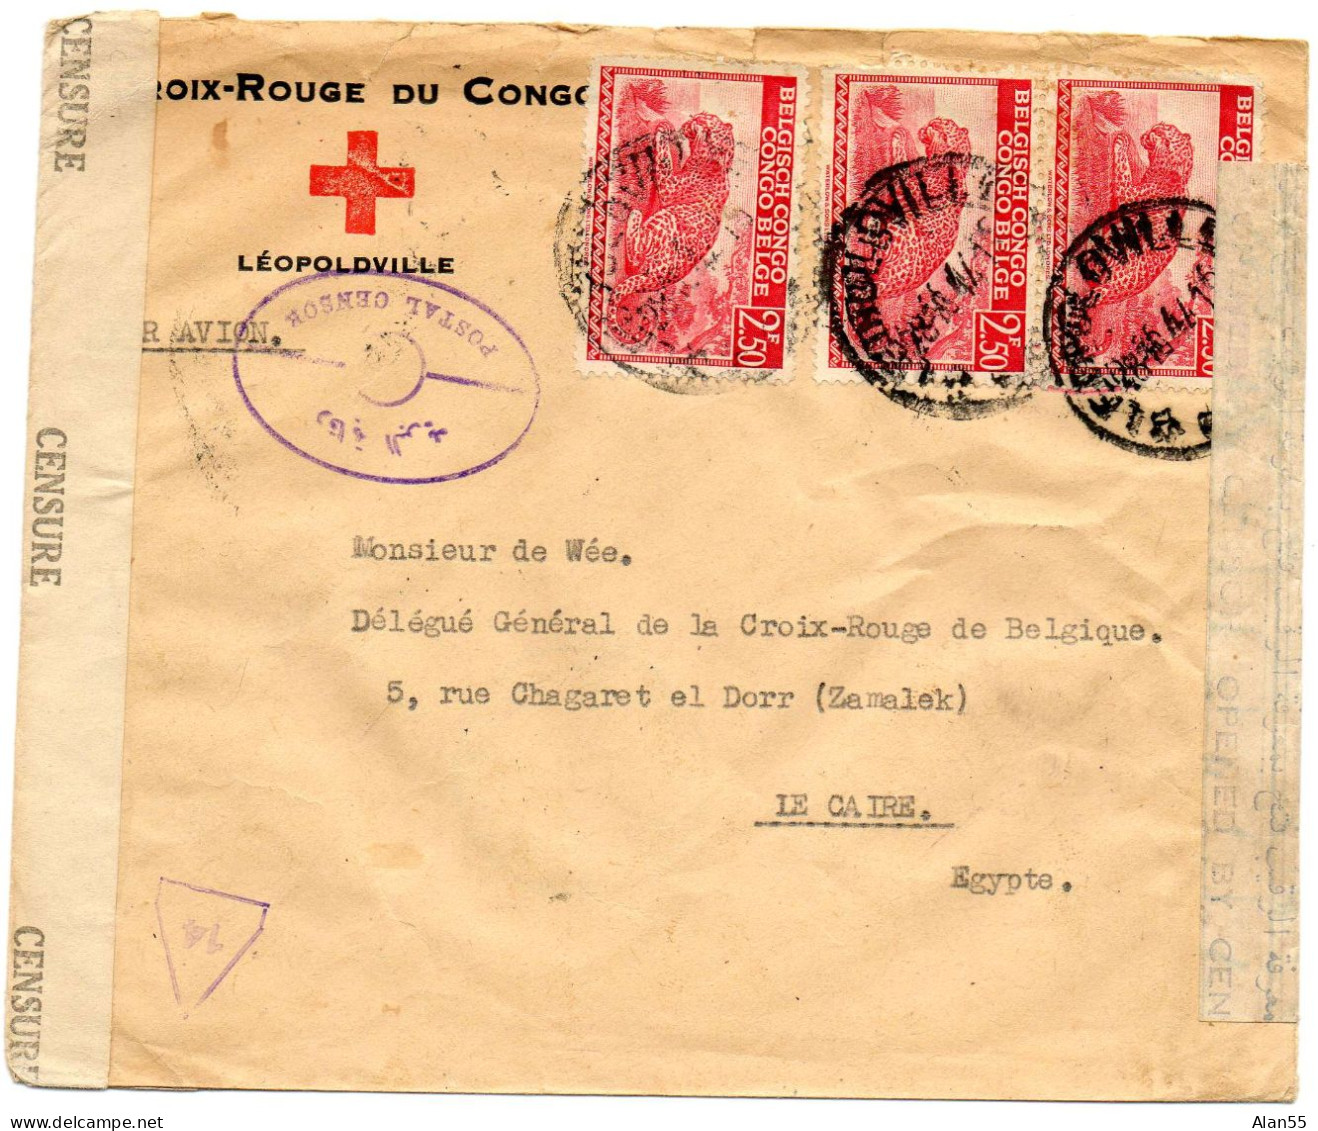 CONGO BELGE. 1944. CROIX-ROUGE DU CONGO A LEOPOLDVILLE POUR CROIX-ROUGE BELGE EN EGYPTE. DOUBLE CENSURE. - Covers & Documents